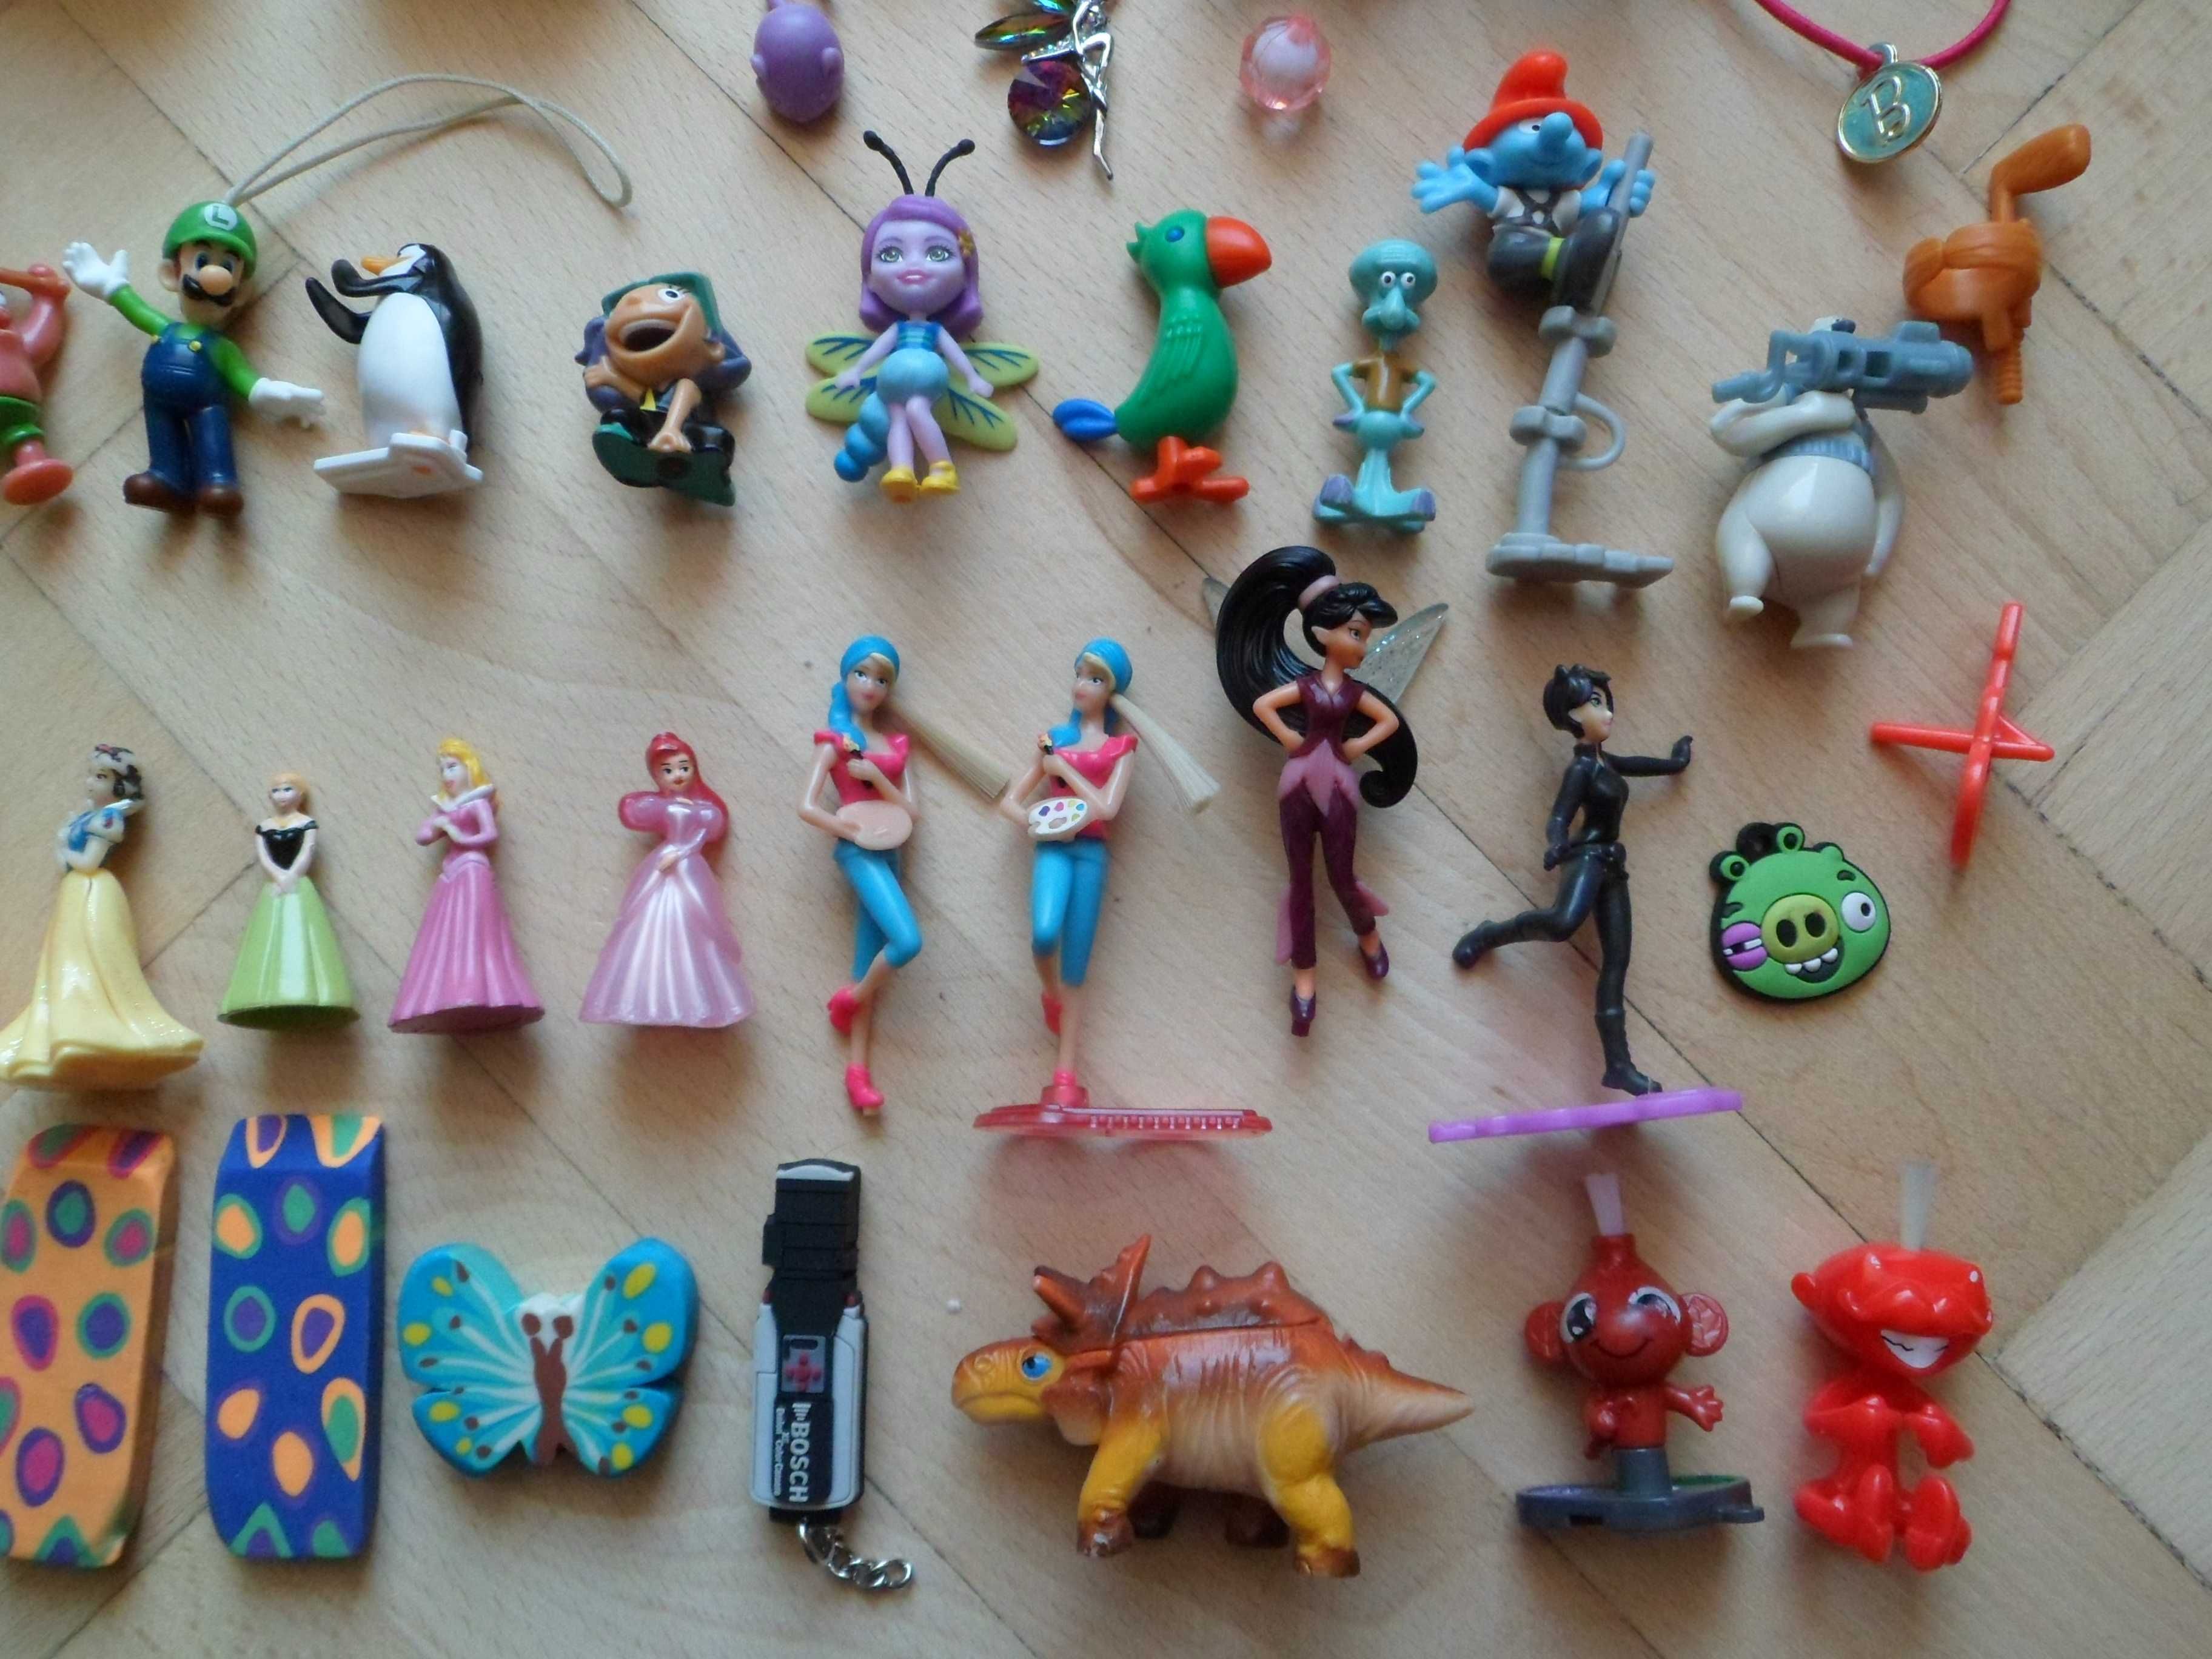 Zestaw zabawek - figurki, breloczki, auta, księżniczki, bajki